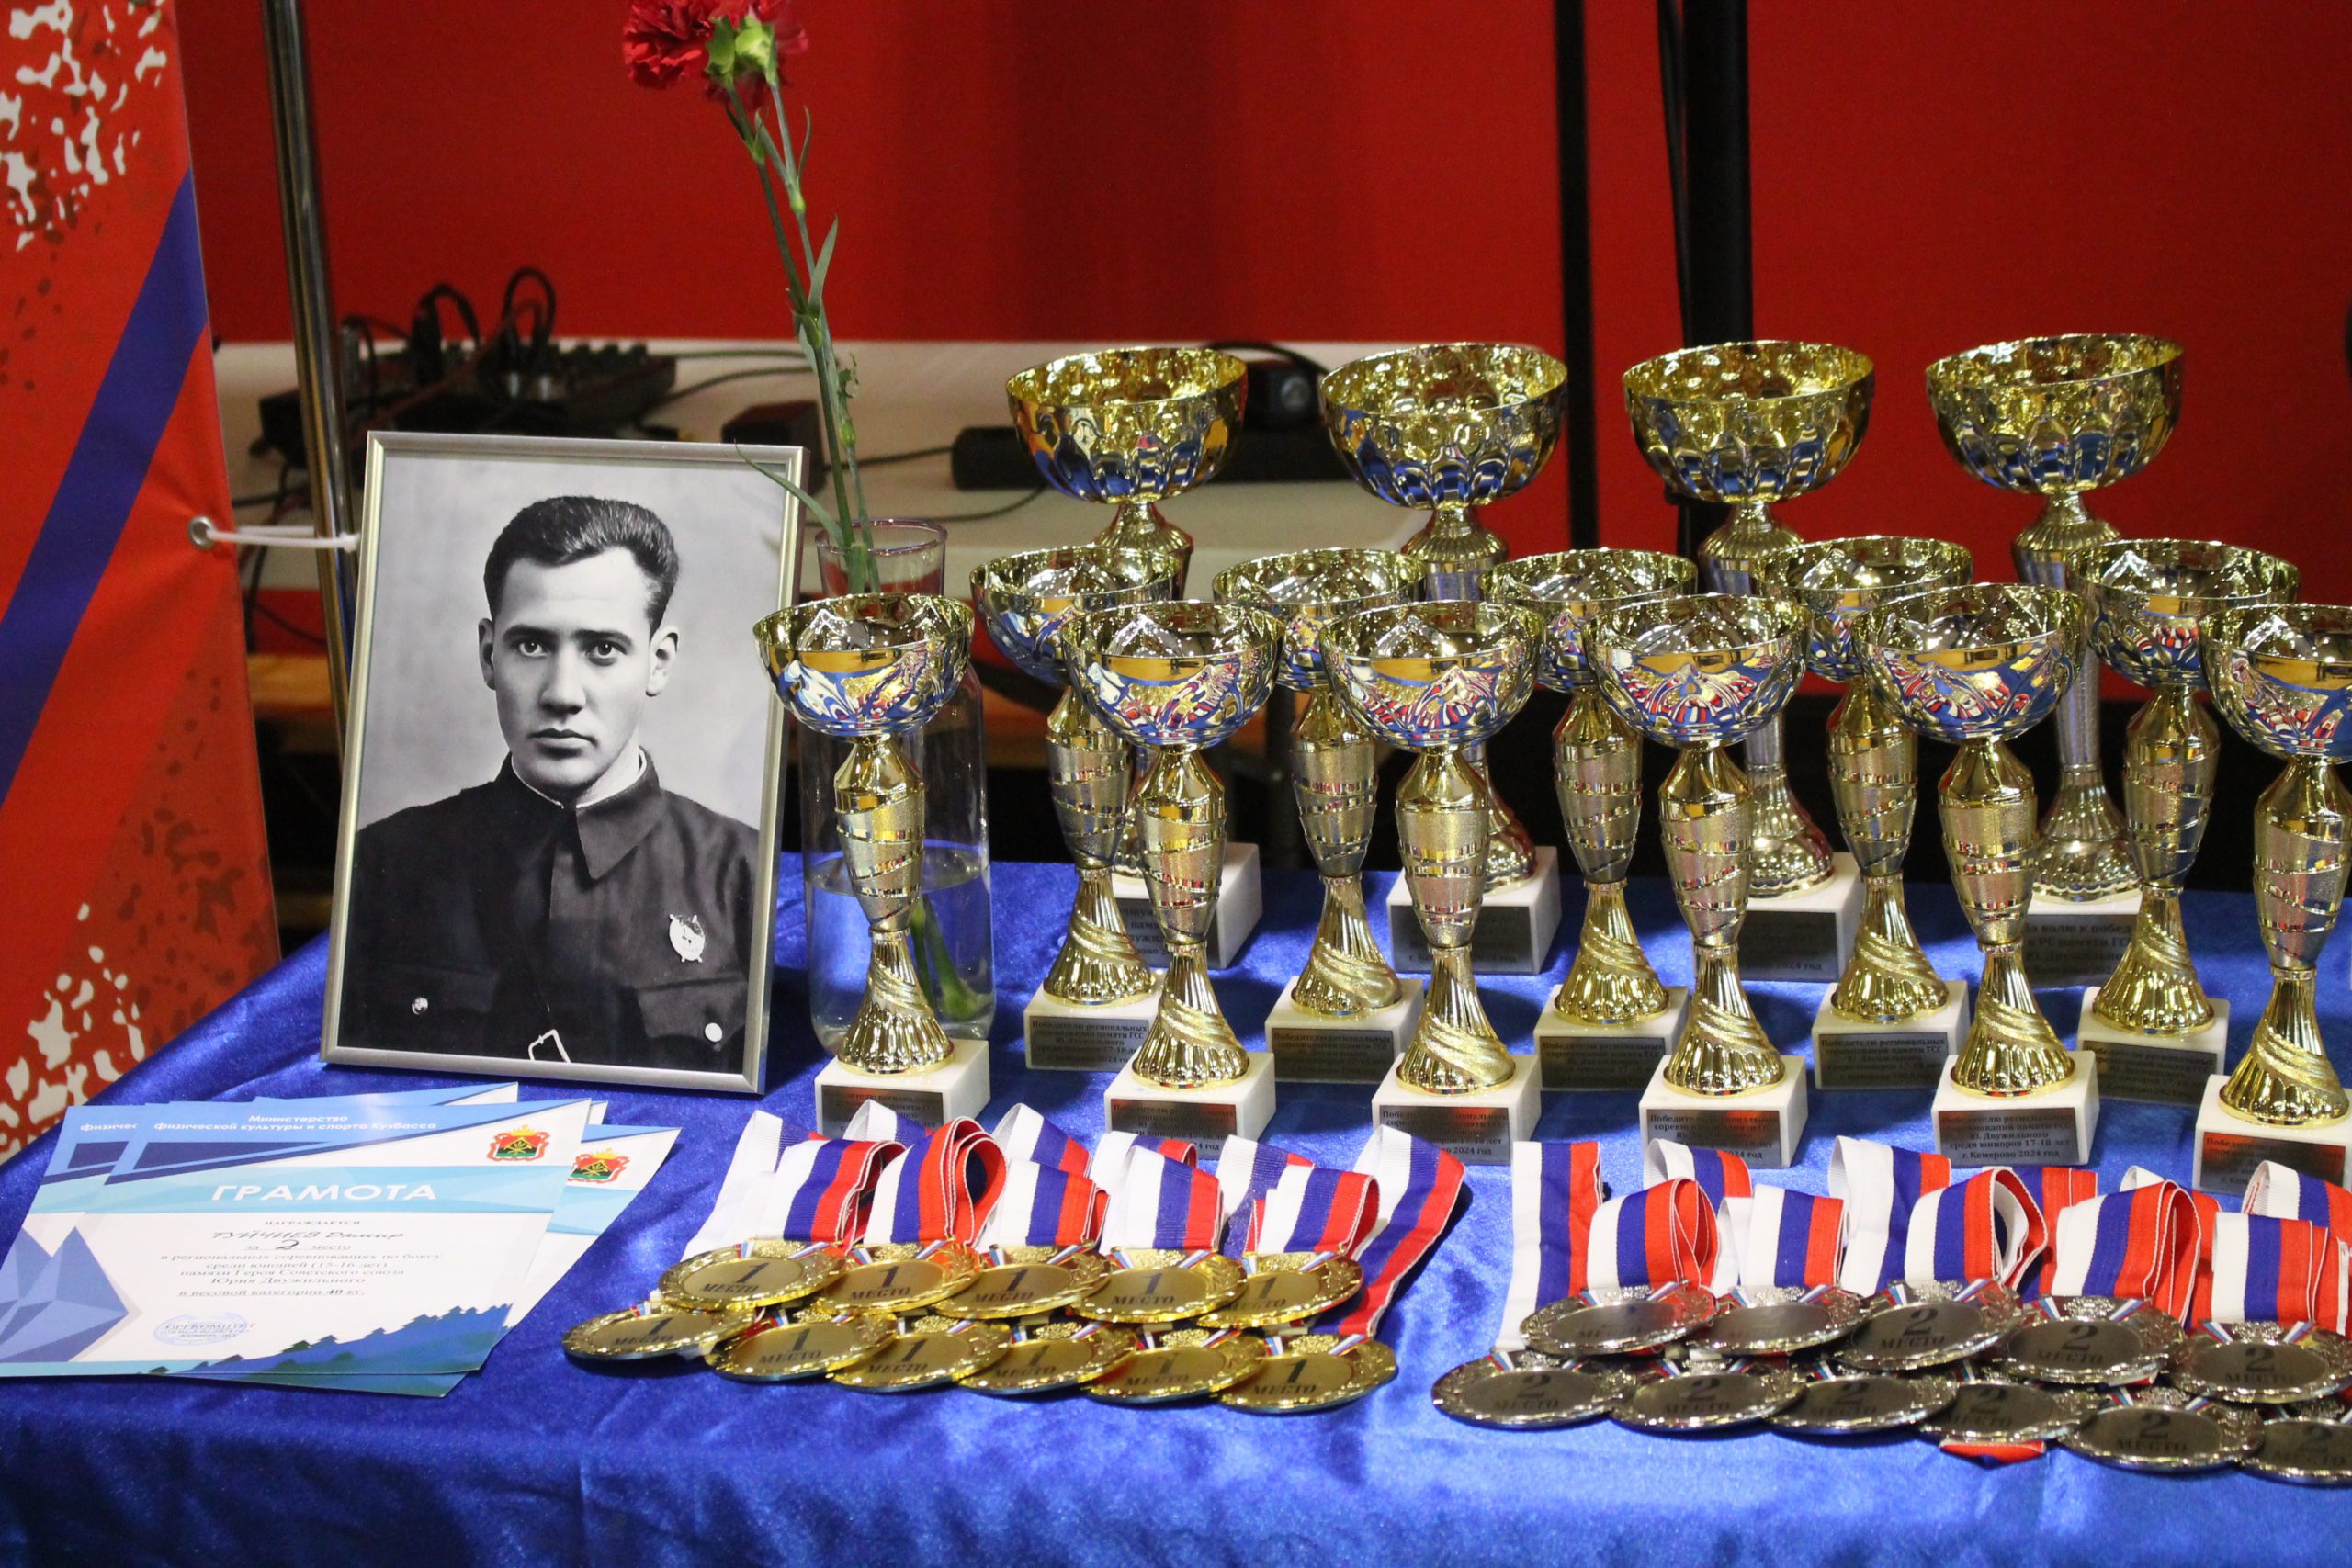 В Кемерове завершился традиционный региональный турнир памяти героя Советского Союза Юрия Двужильного